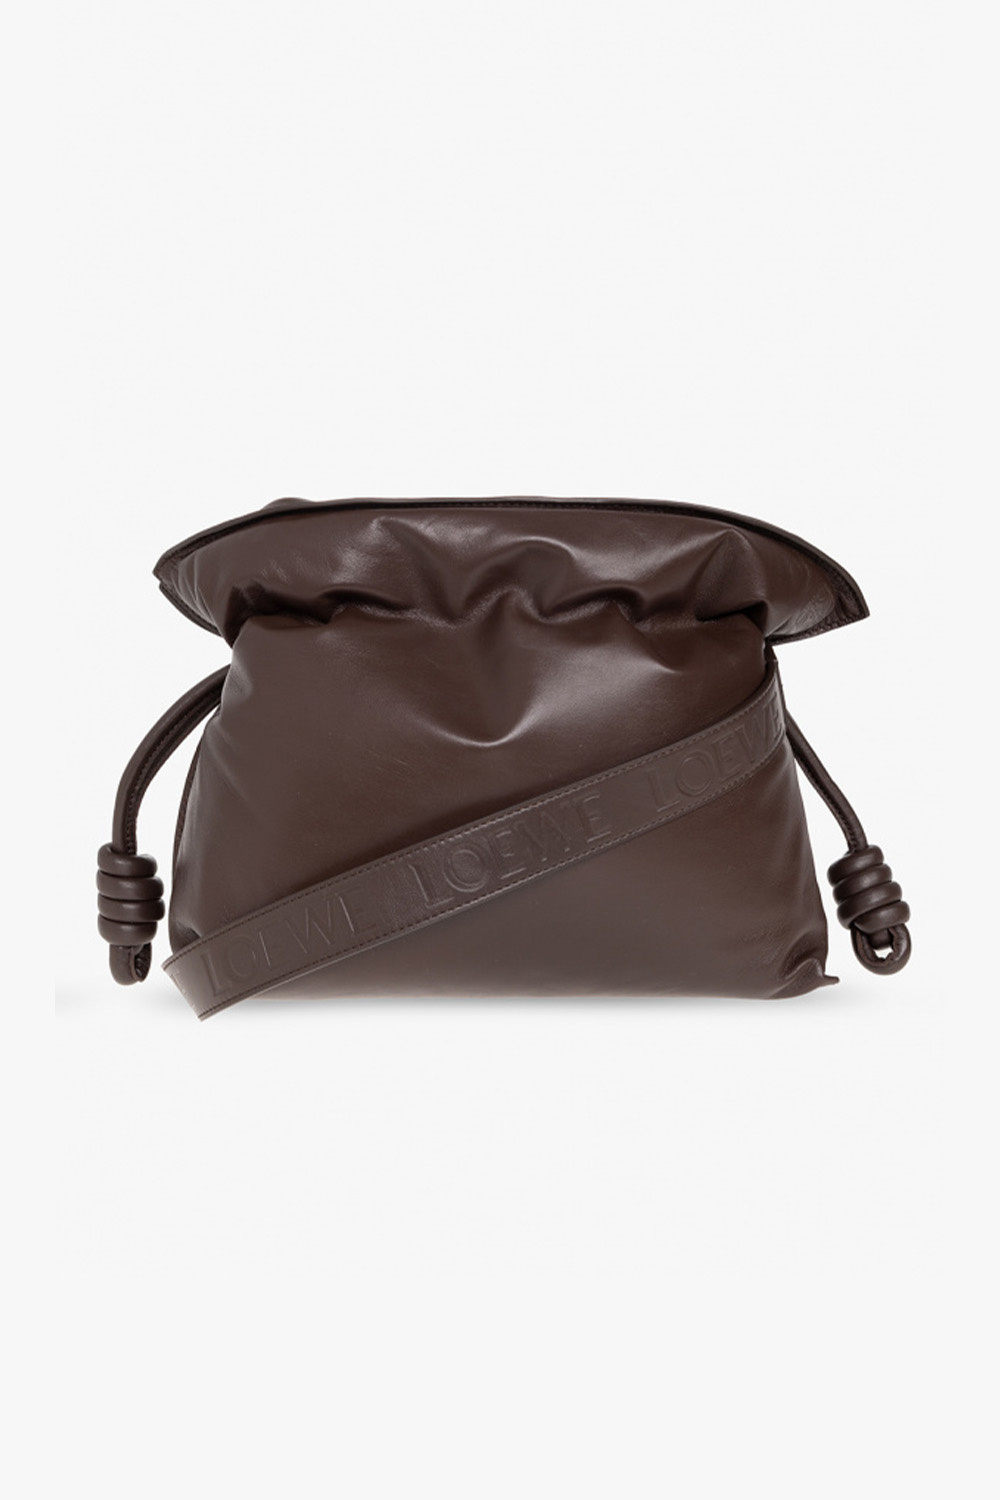 LOEWE Leather One Shoulder Bag Brown